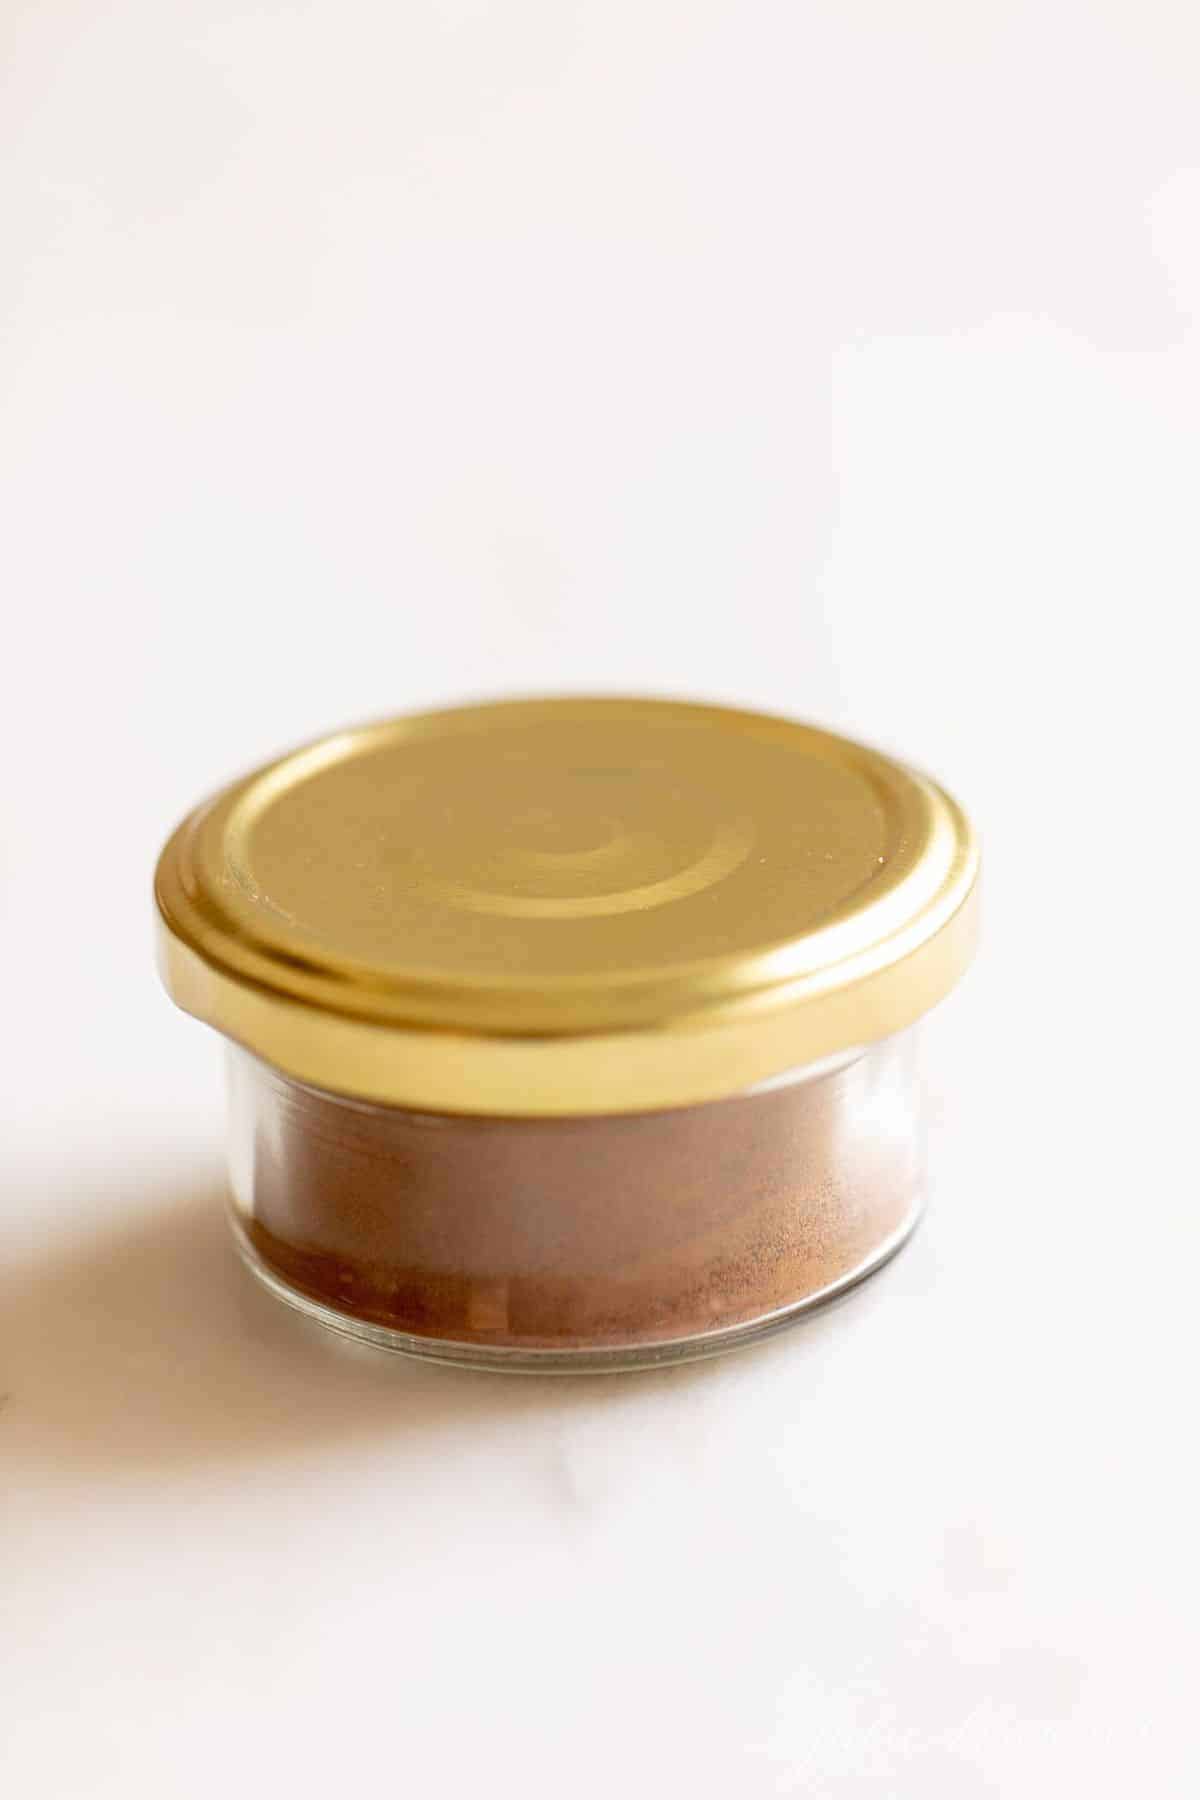 透明的香料罐，金色的盖子，放在白色的台面上。gydF4y2Ba